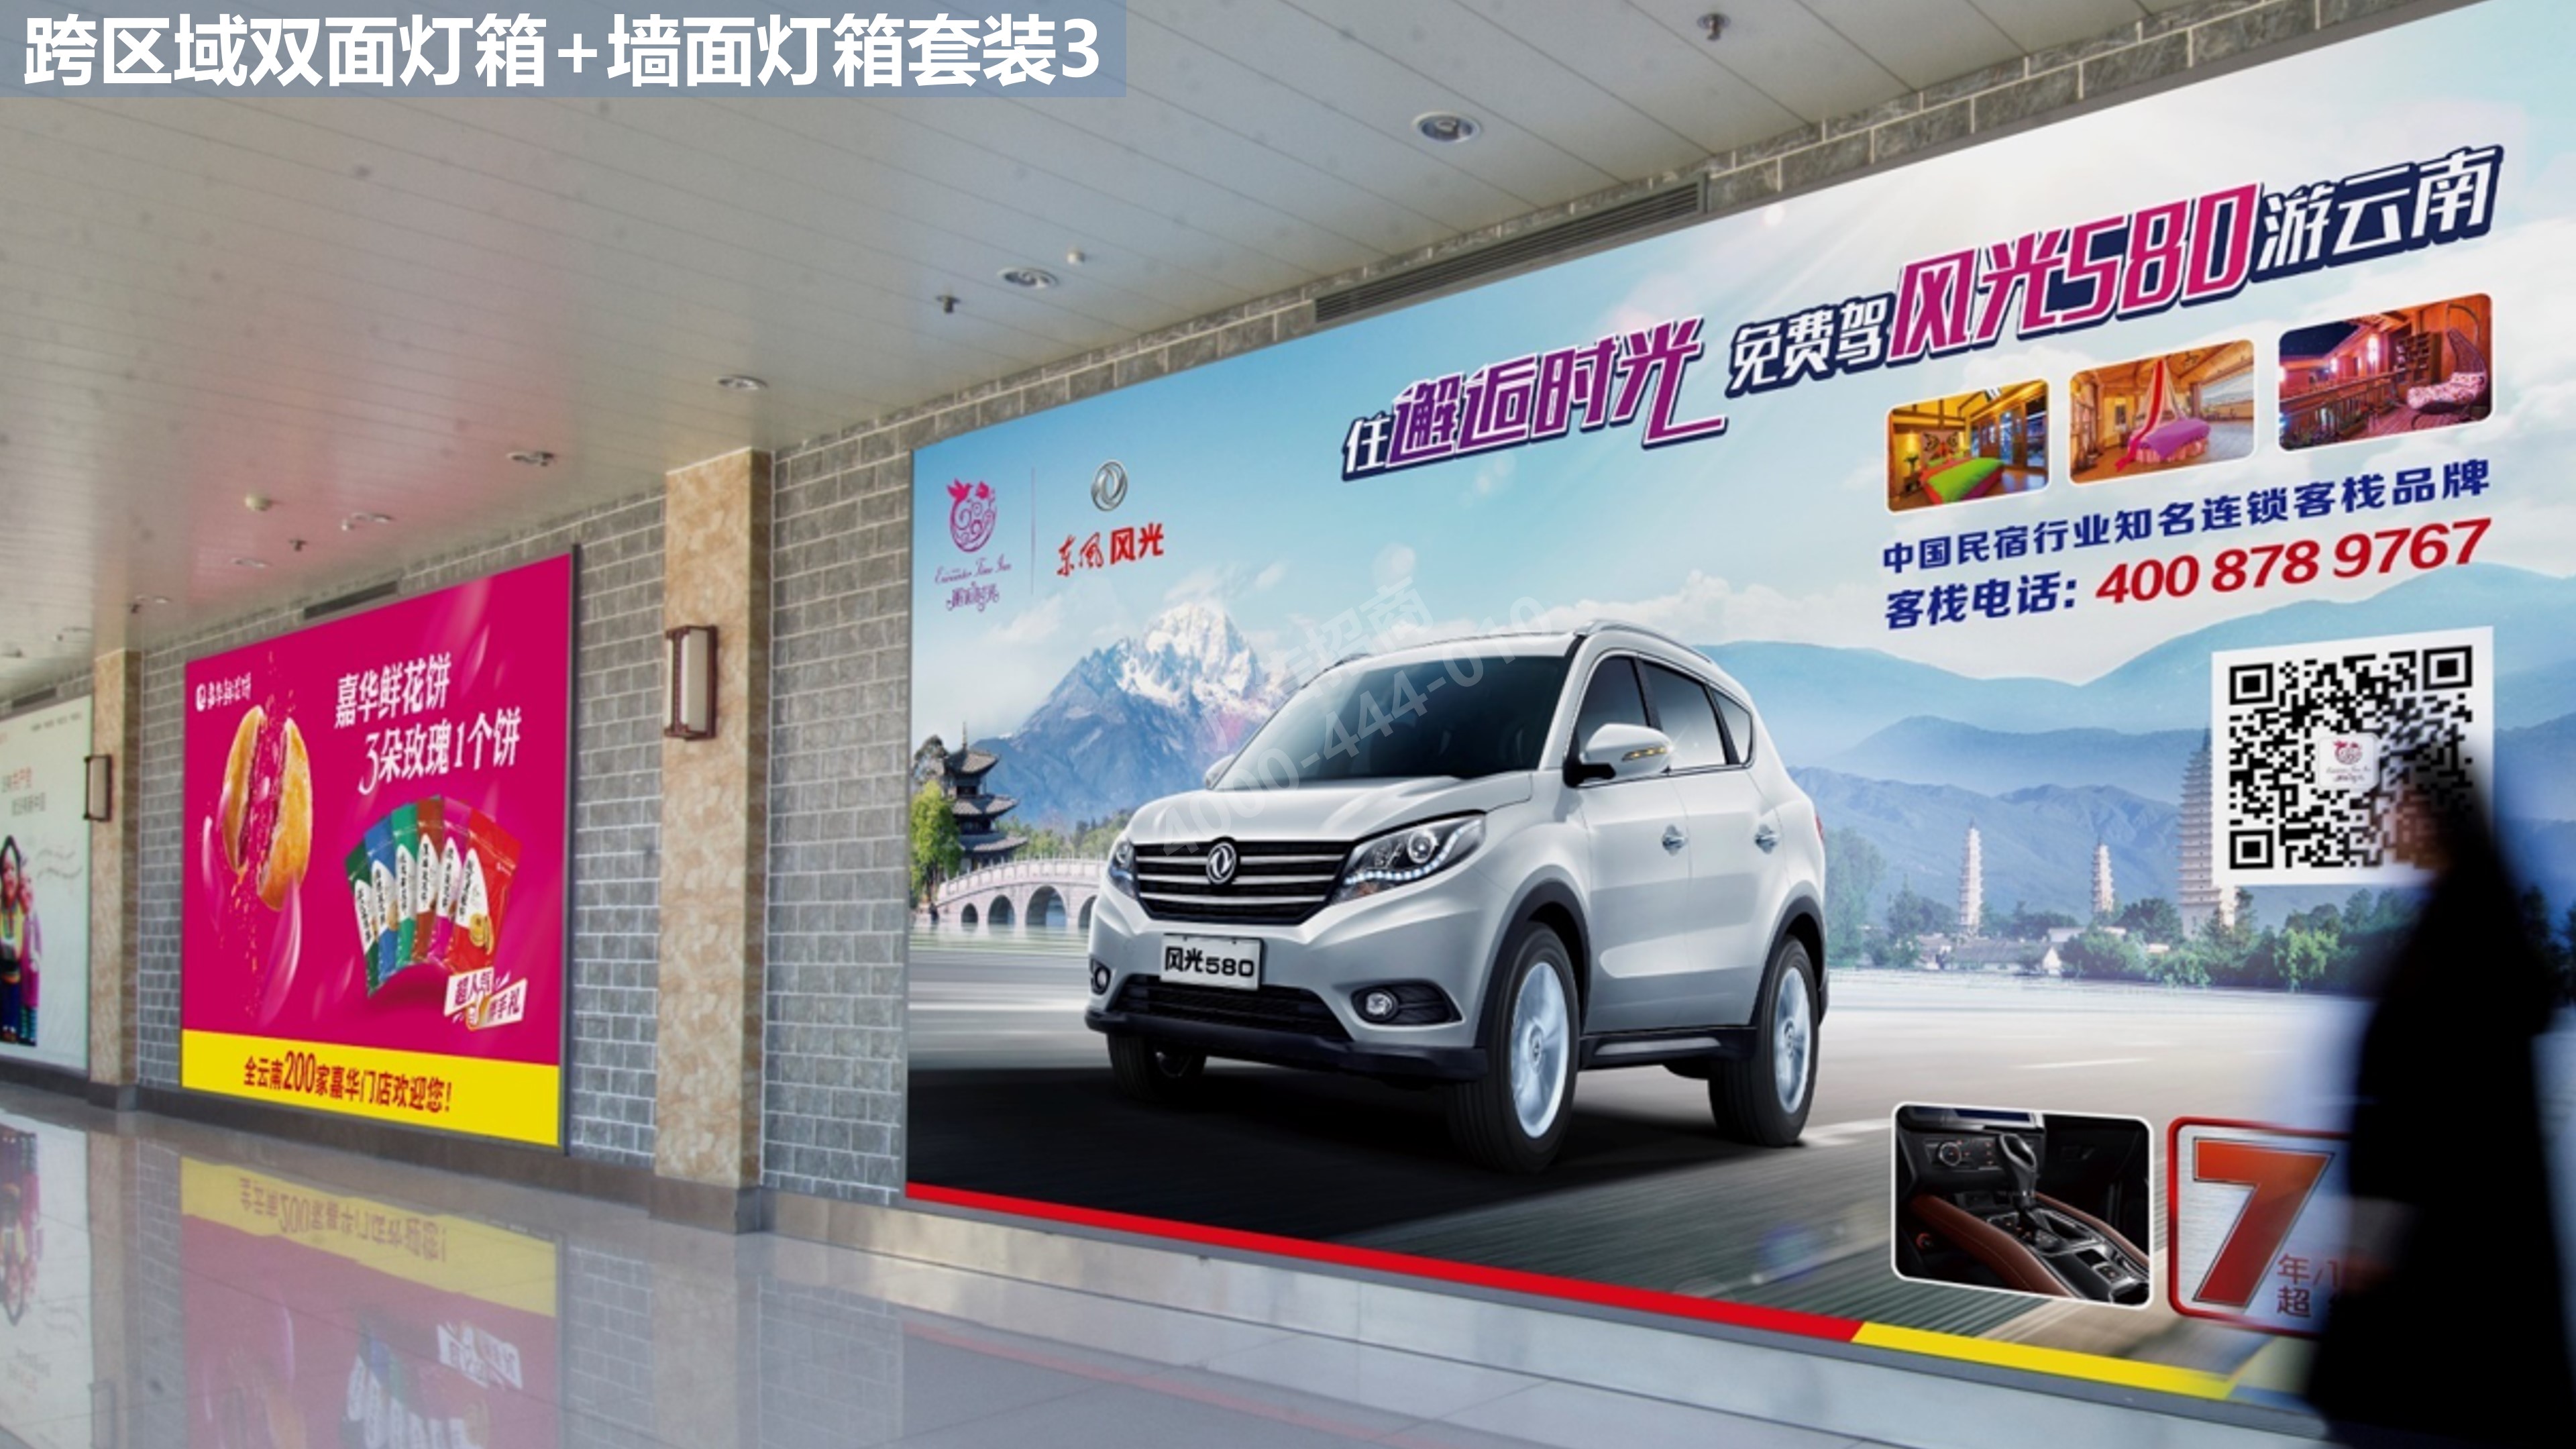 丽江机场跨区域候机广告3